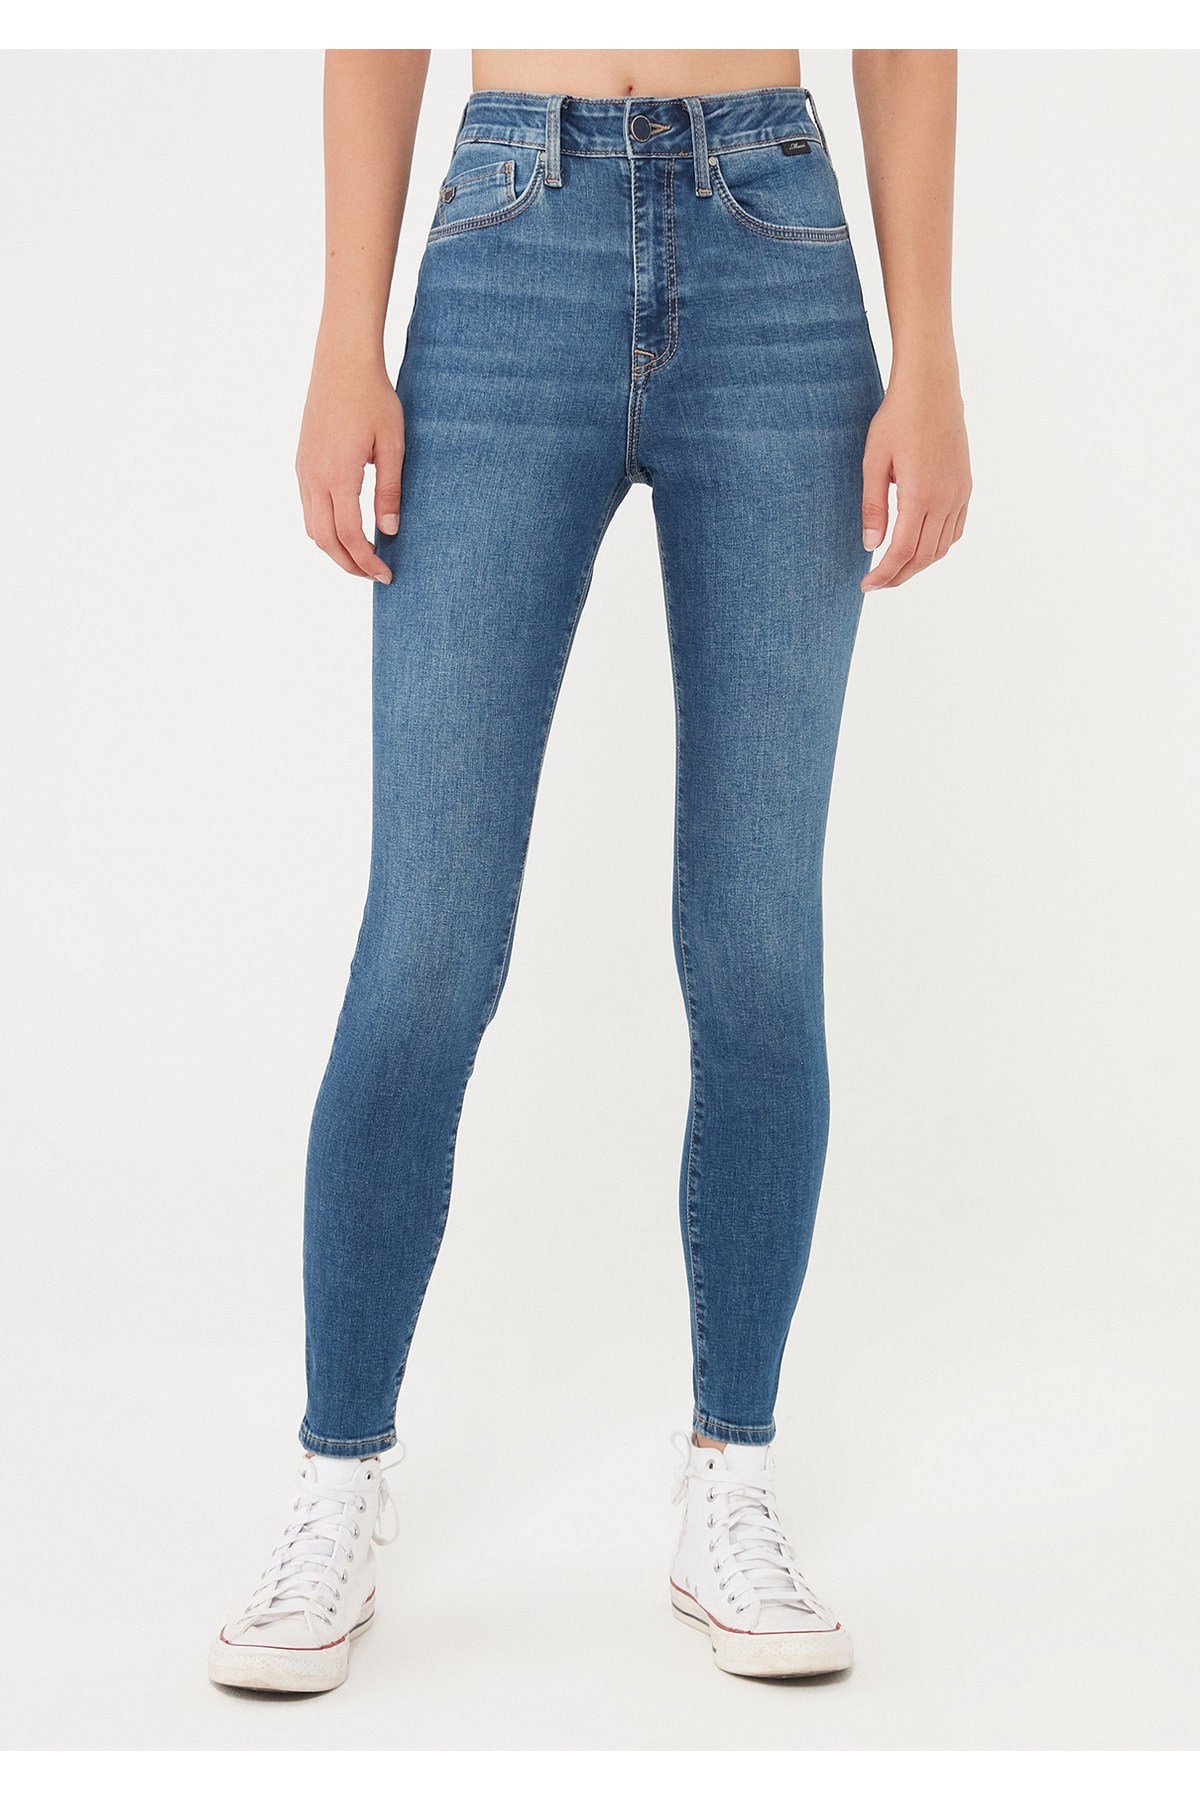 Mavi Jeans Kadın Pantolon 101065-32534 